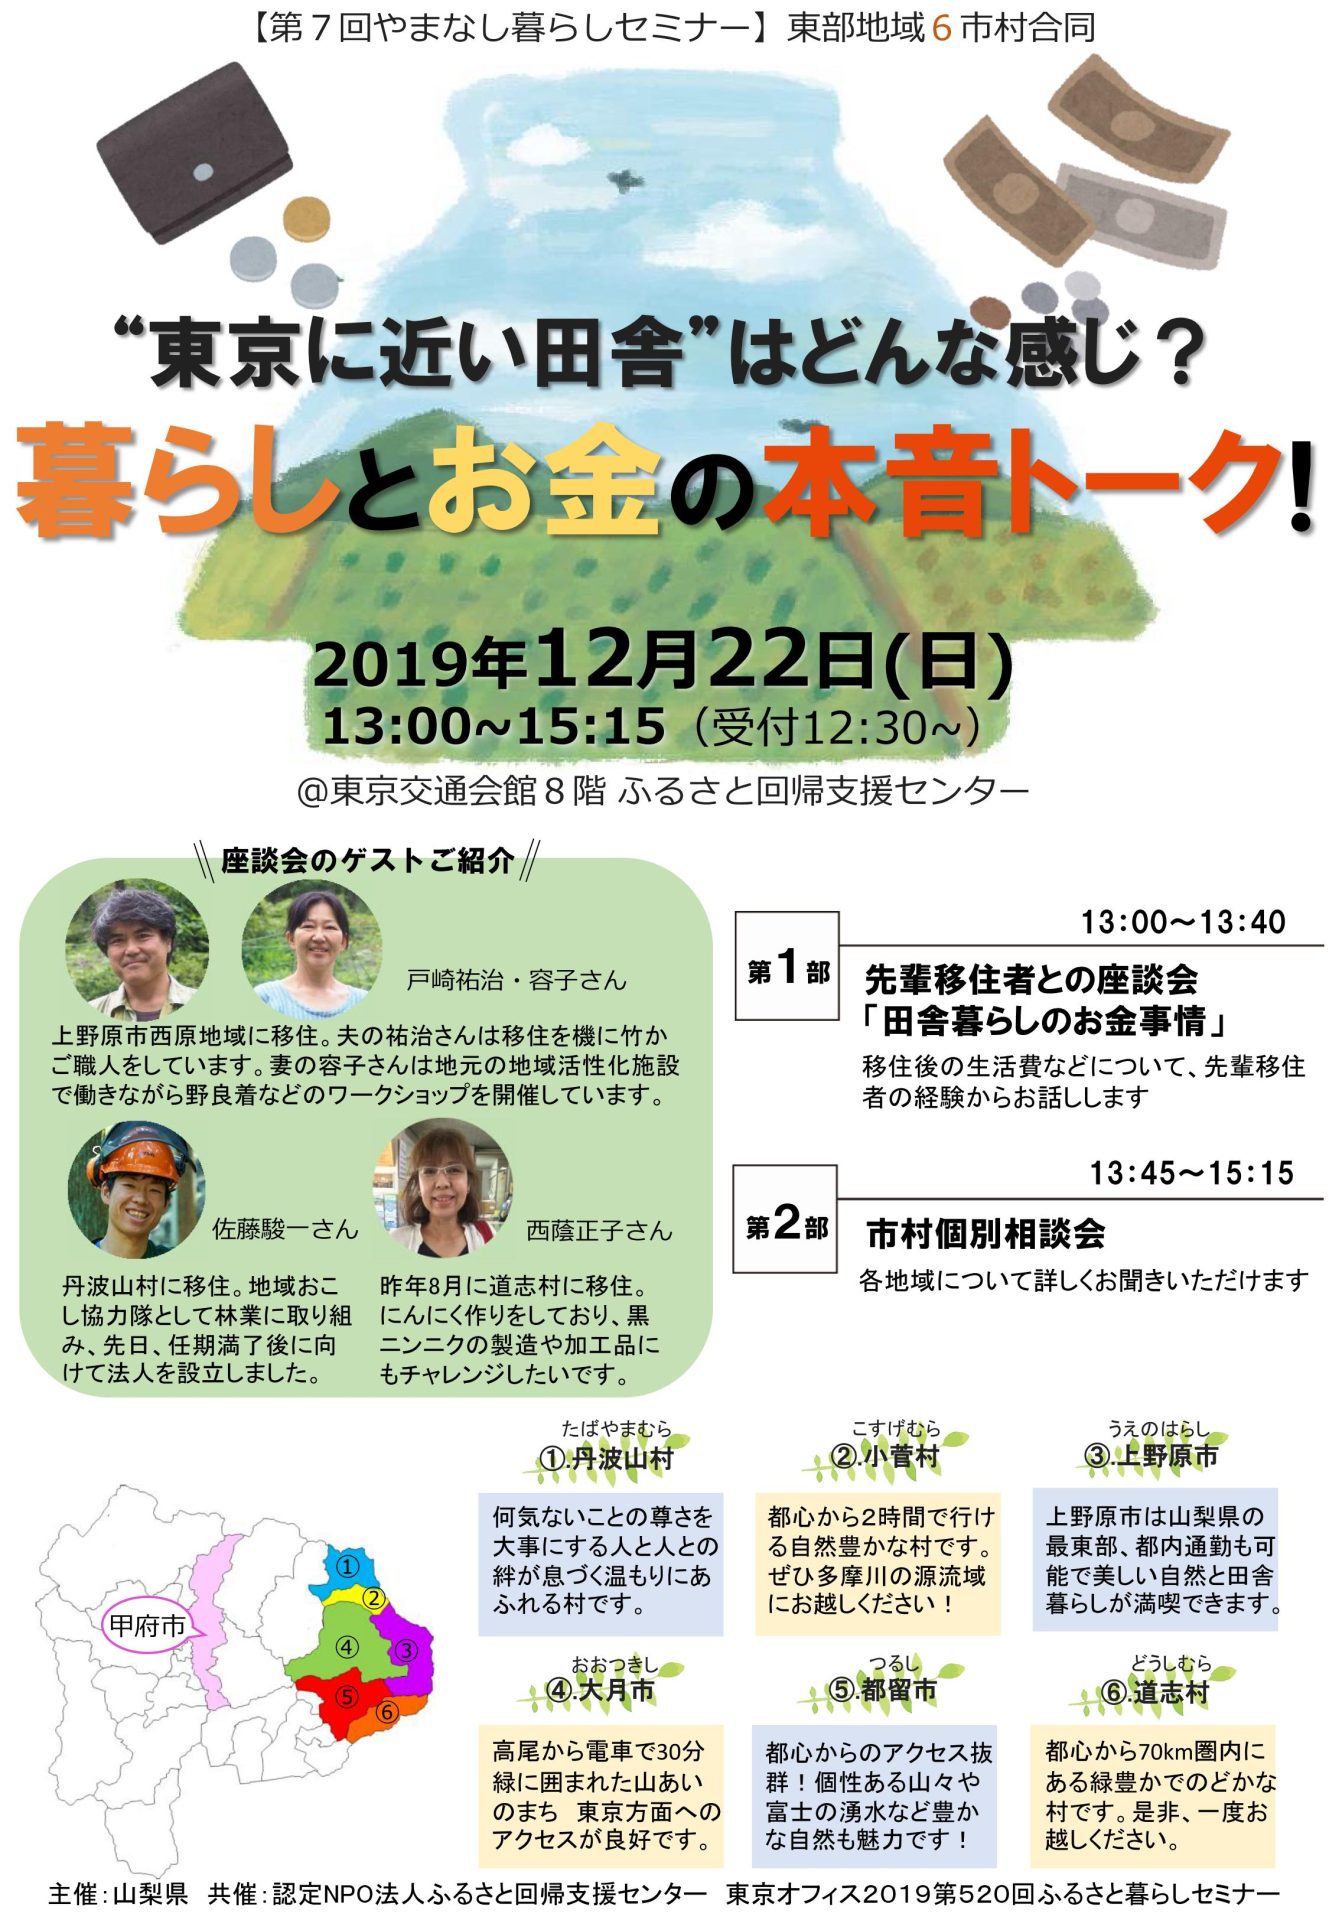 東京に近い田舎・やまなし東部「暮らしとお金の本音トーク！」 | 移住関連イベント情報